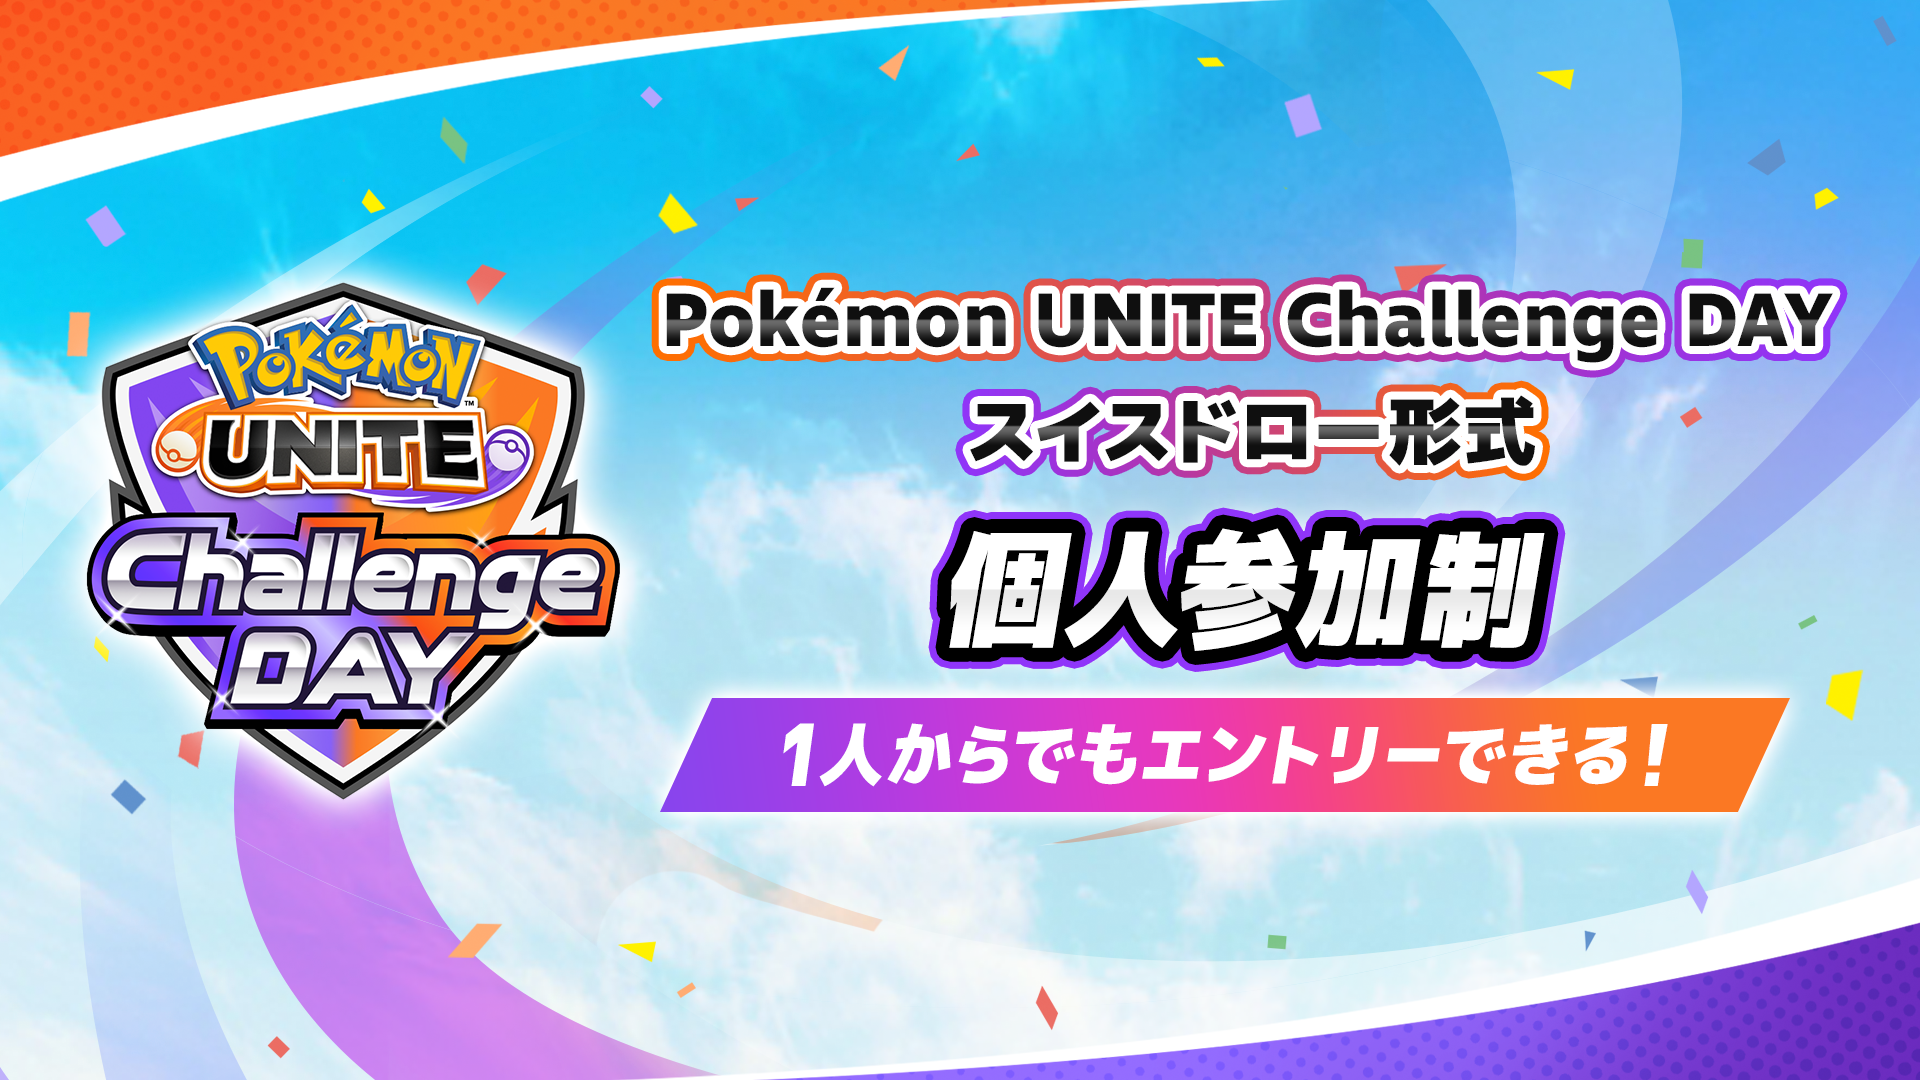 Pokemon UNITE Challenge DAY 11.06 個人参加制 スイスドロー形式 午前の部・午後の部 計3イベント開催！